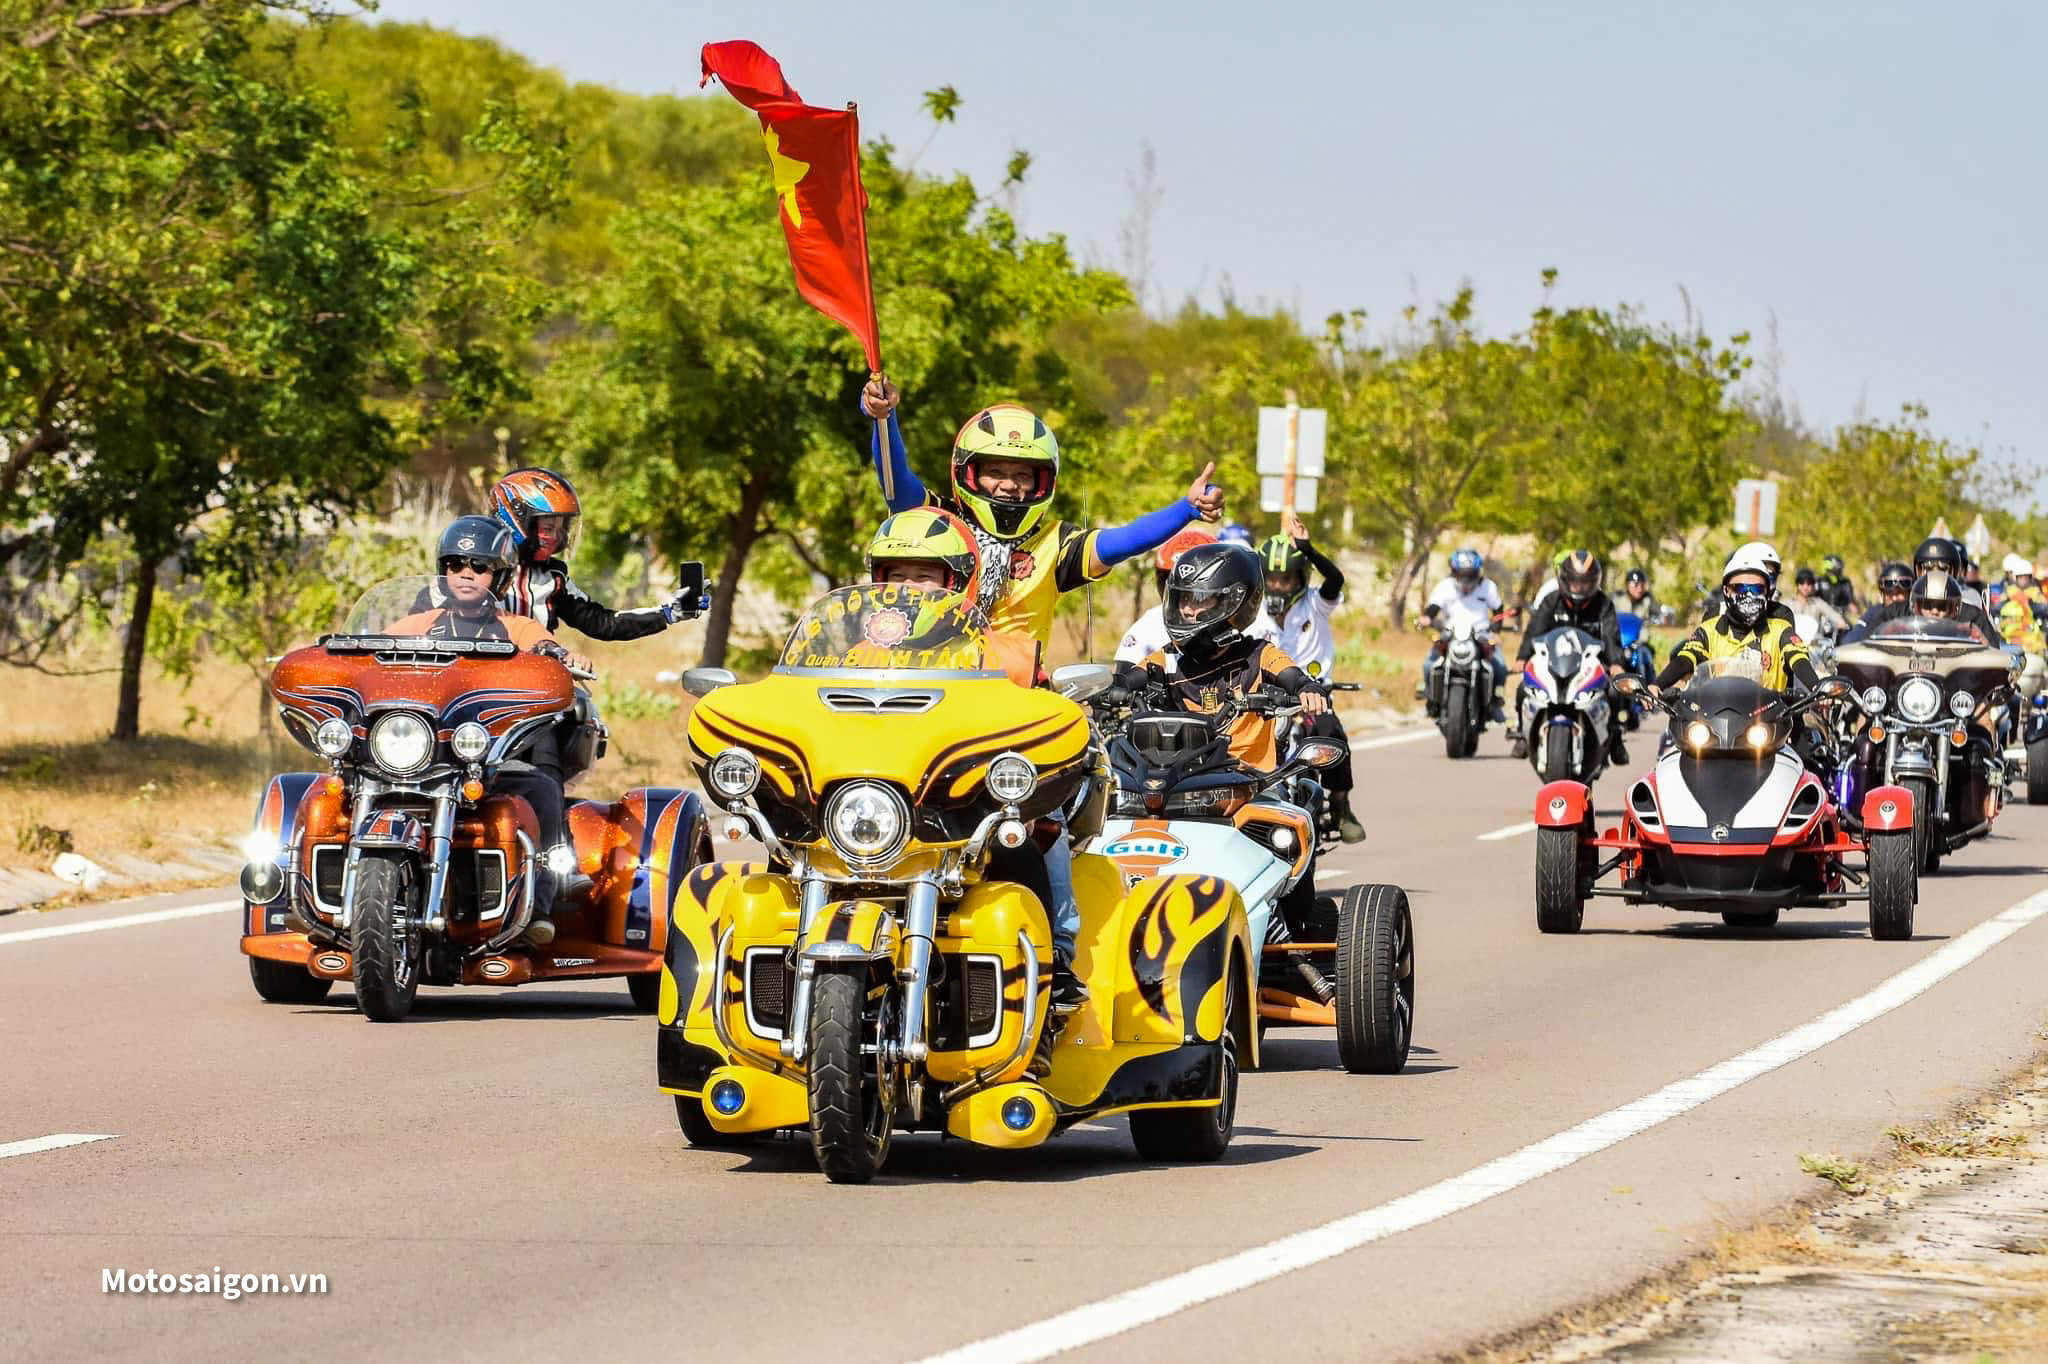 Hơn 1500 chiếc mô tô xác lập Kỷ lục Guinness Đoàn mô tô diễu hành đông nhất và dài nhất Việt Nam 